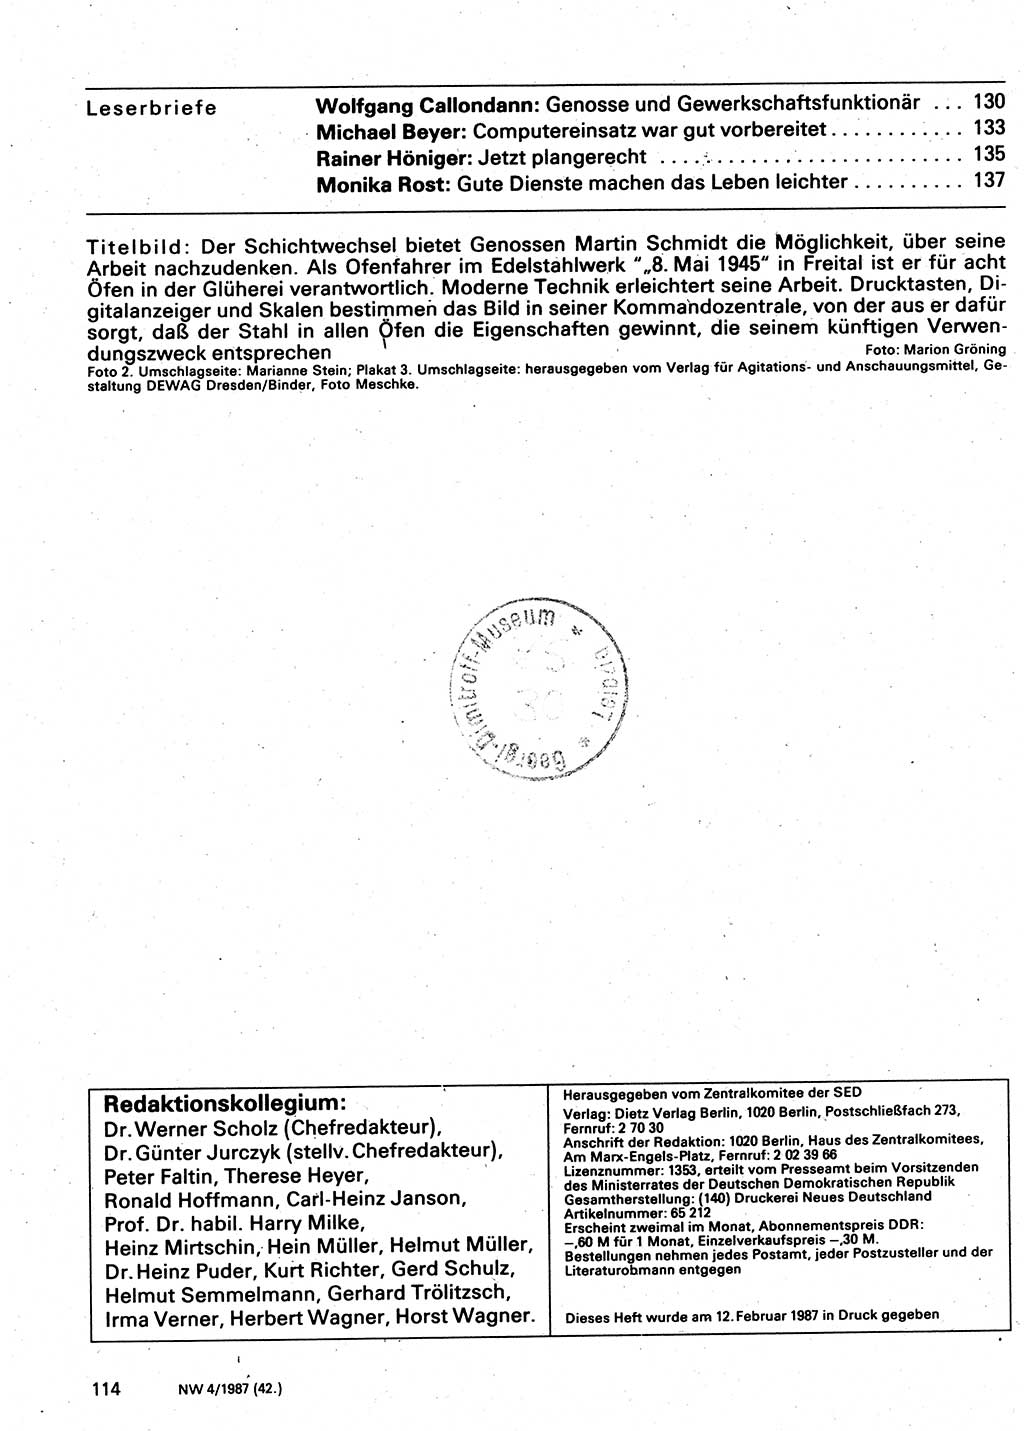 Neuer Weg (NW), Organ des Zentralkomitees (ZK) der SED (Sozialistische Einheitspartei Deutschlands) für Fragen des Parteilebens, 42. Jahrgang [Deutsche Demokratische Republik (DDR)] 1987, Seite 114 (NW ZK SED DDR 1987, S. 114)